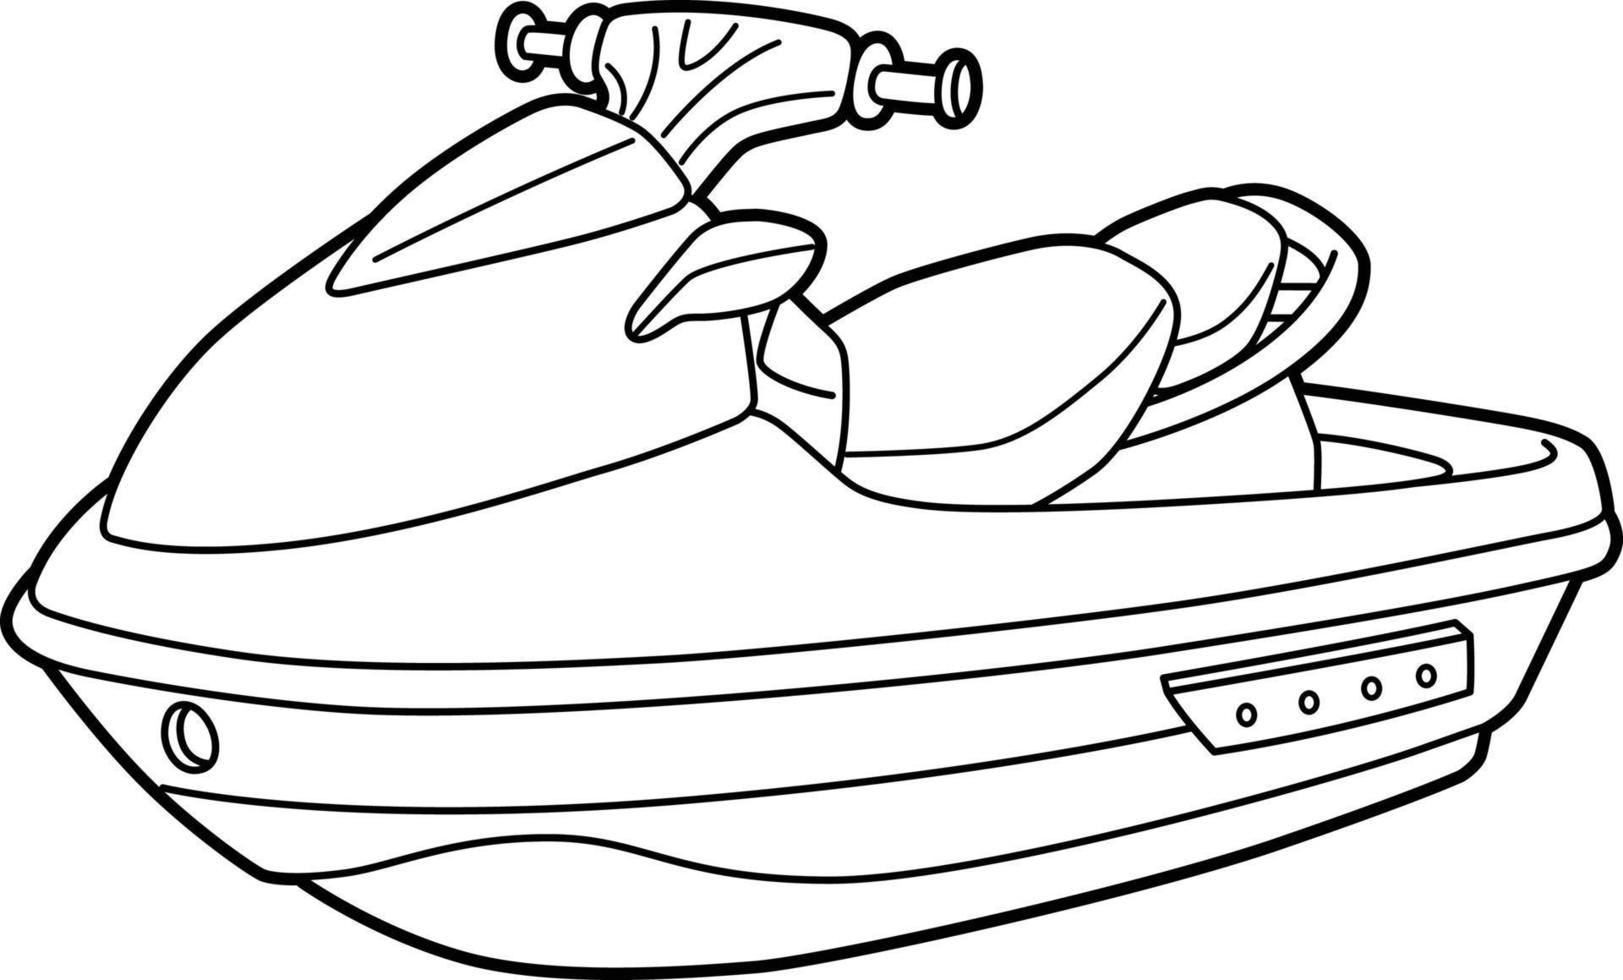 Página para colorear de vehículos de motos acuáticas para niños vector